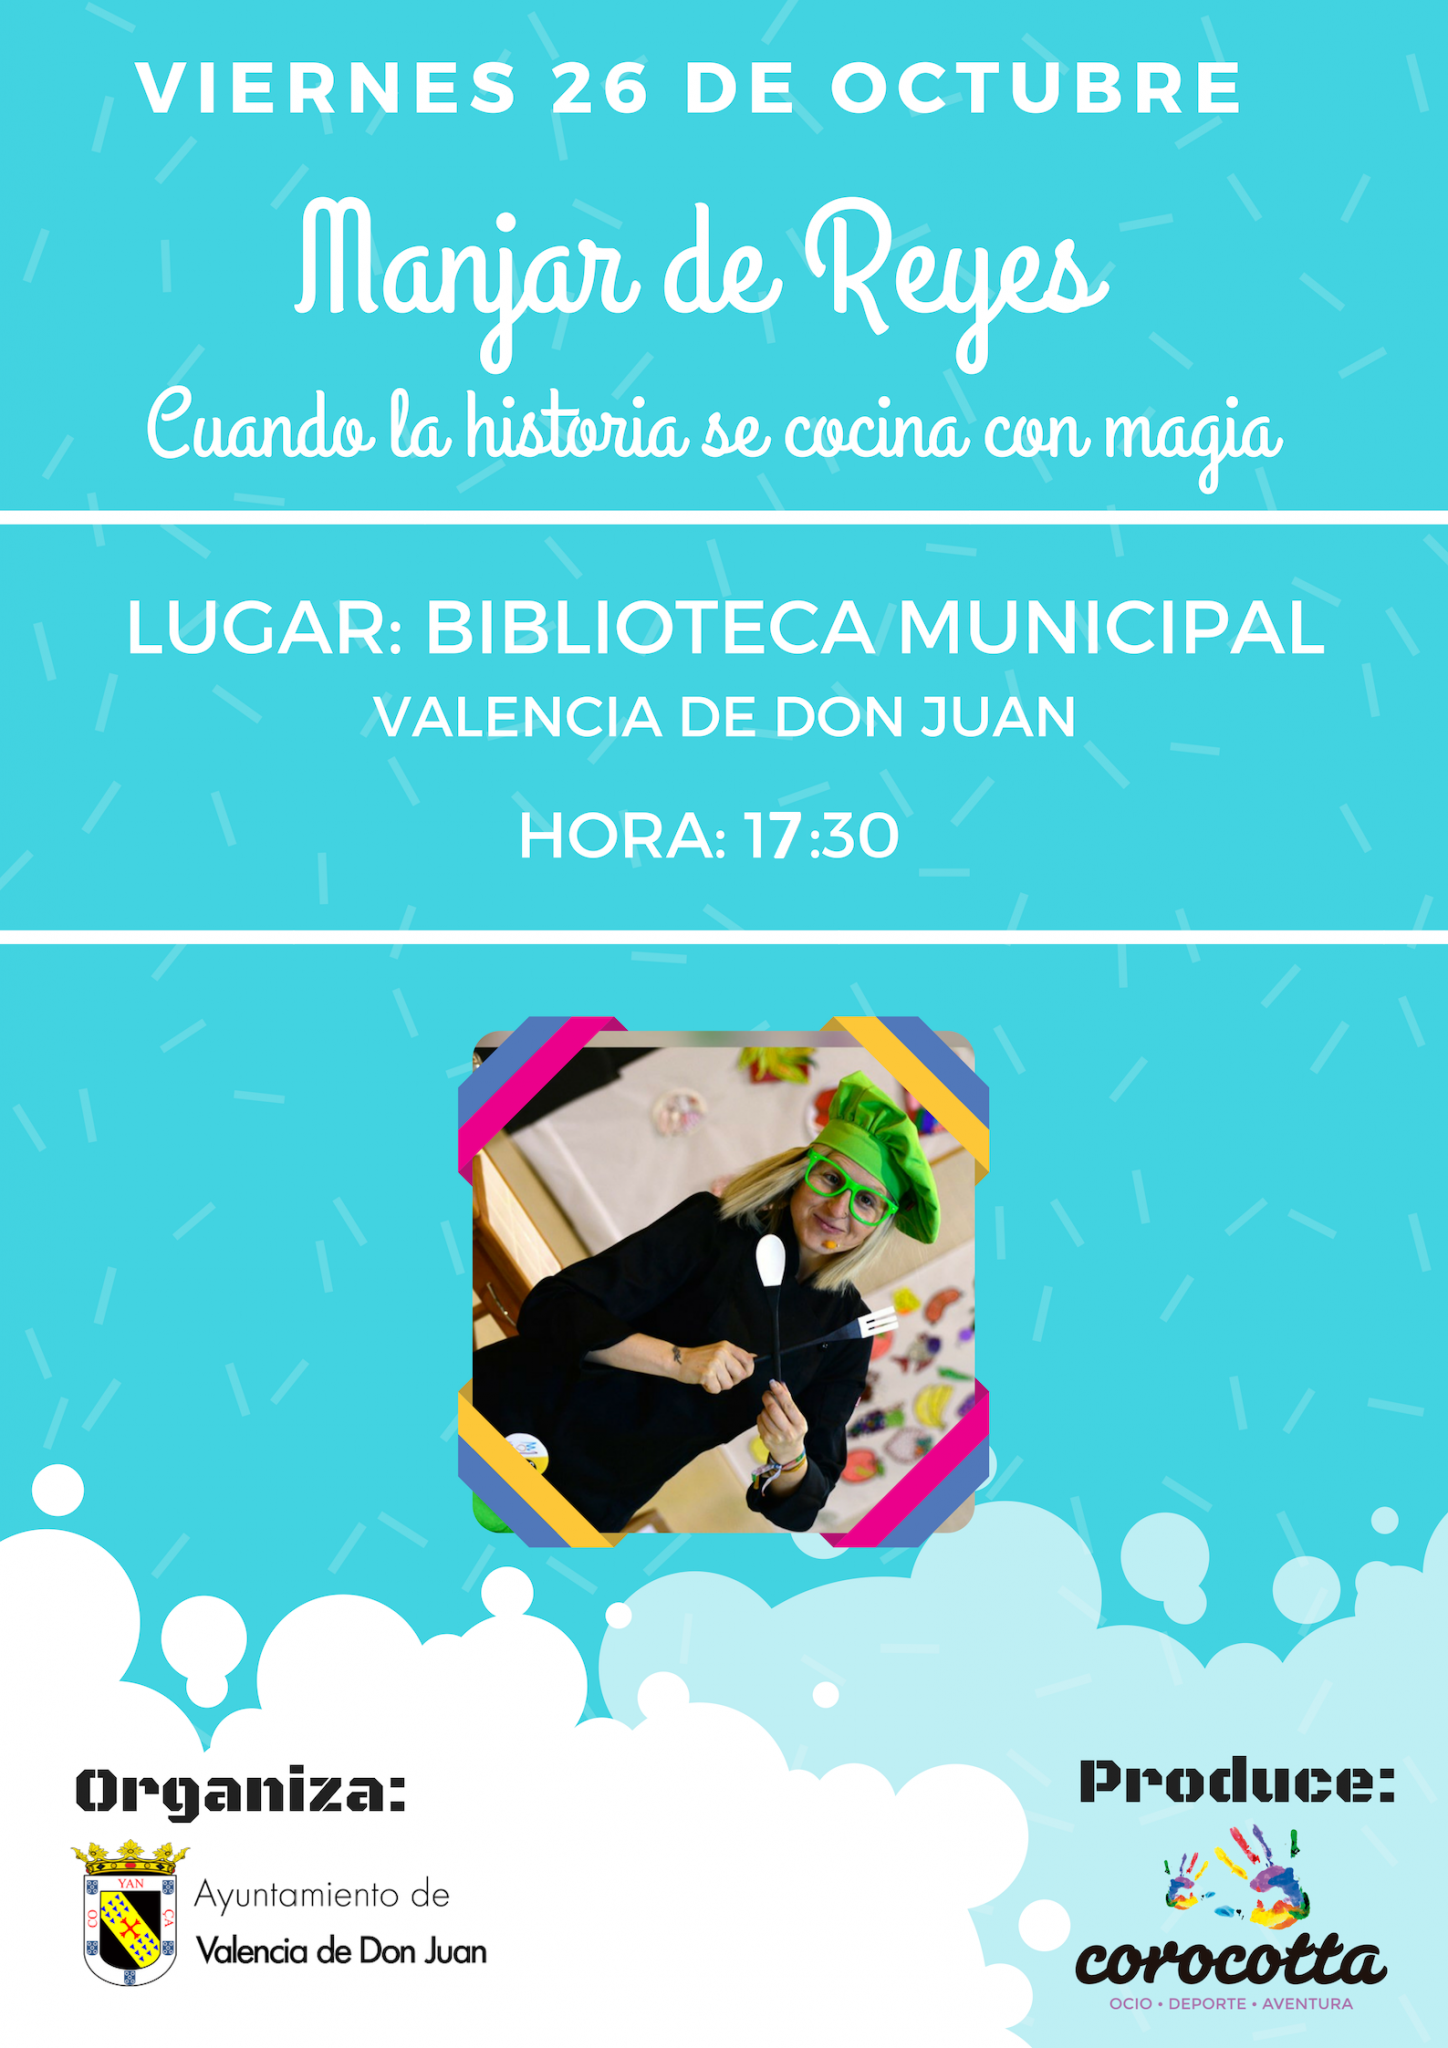 La Biblioteca celebra su Día: Cuentacuentos Mágico “Manjar de Reyes” con Corocotta Producciones.